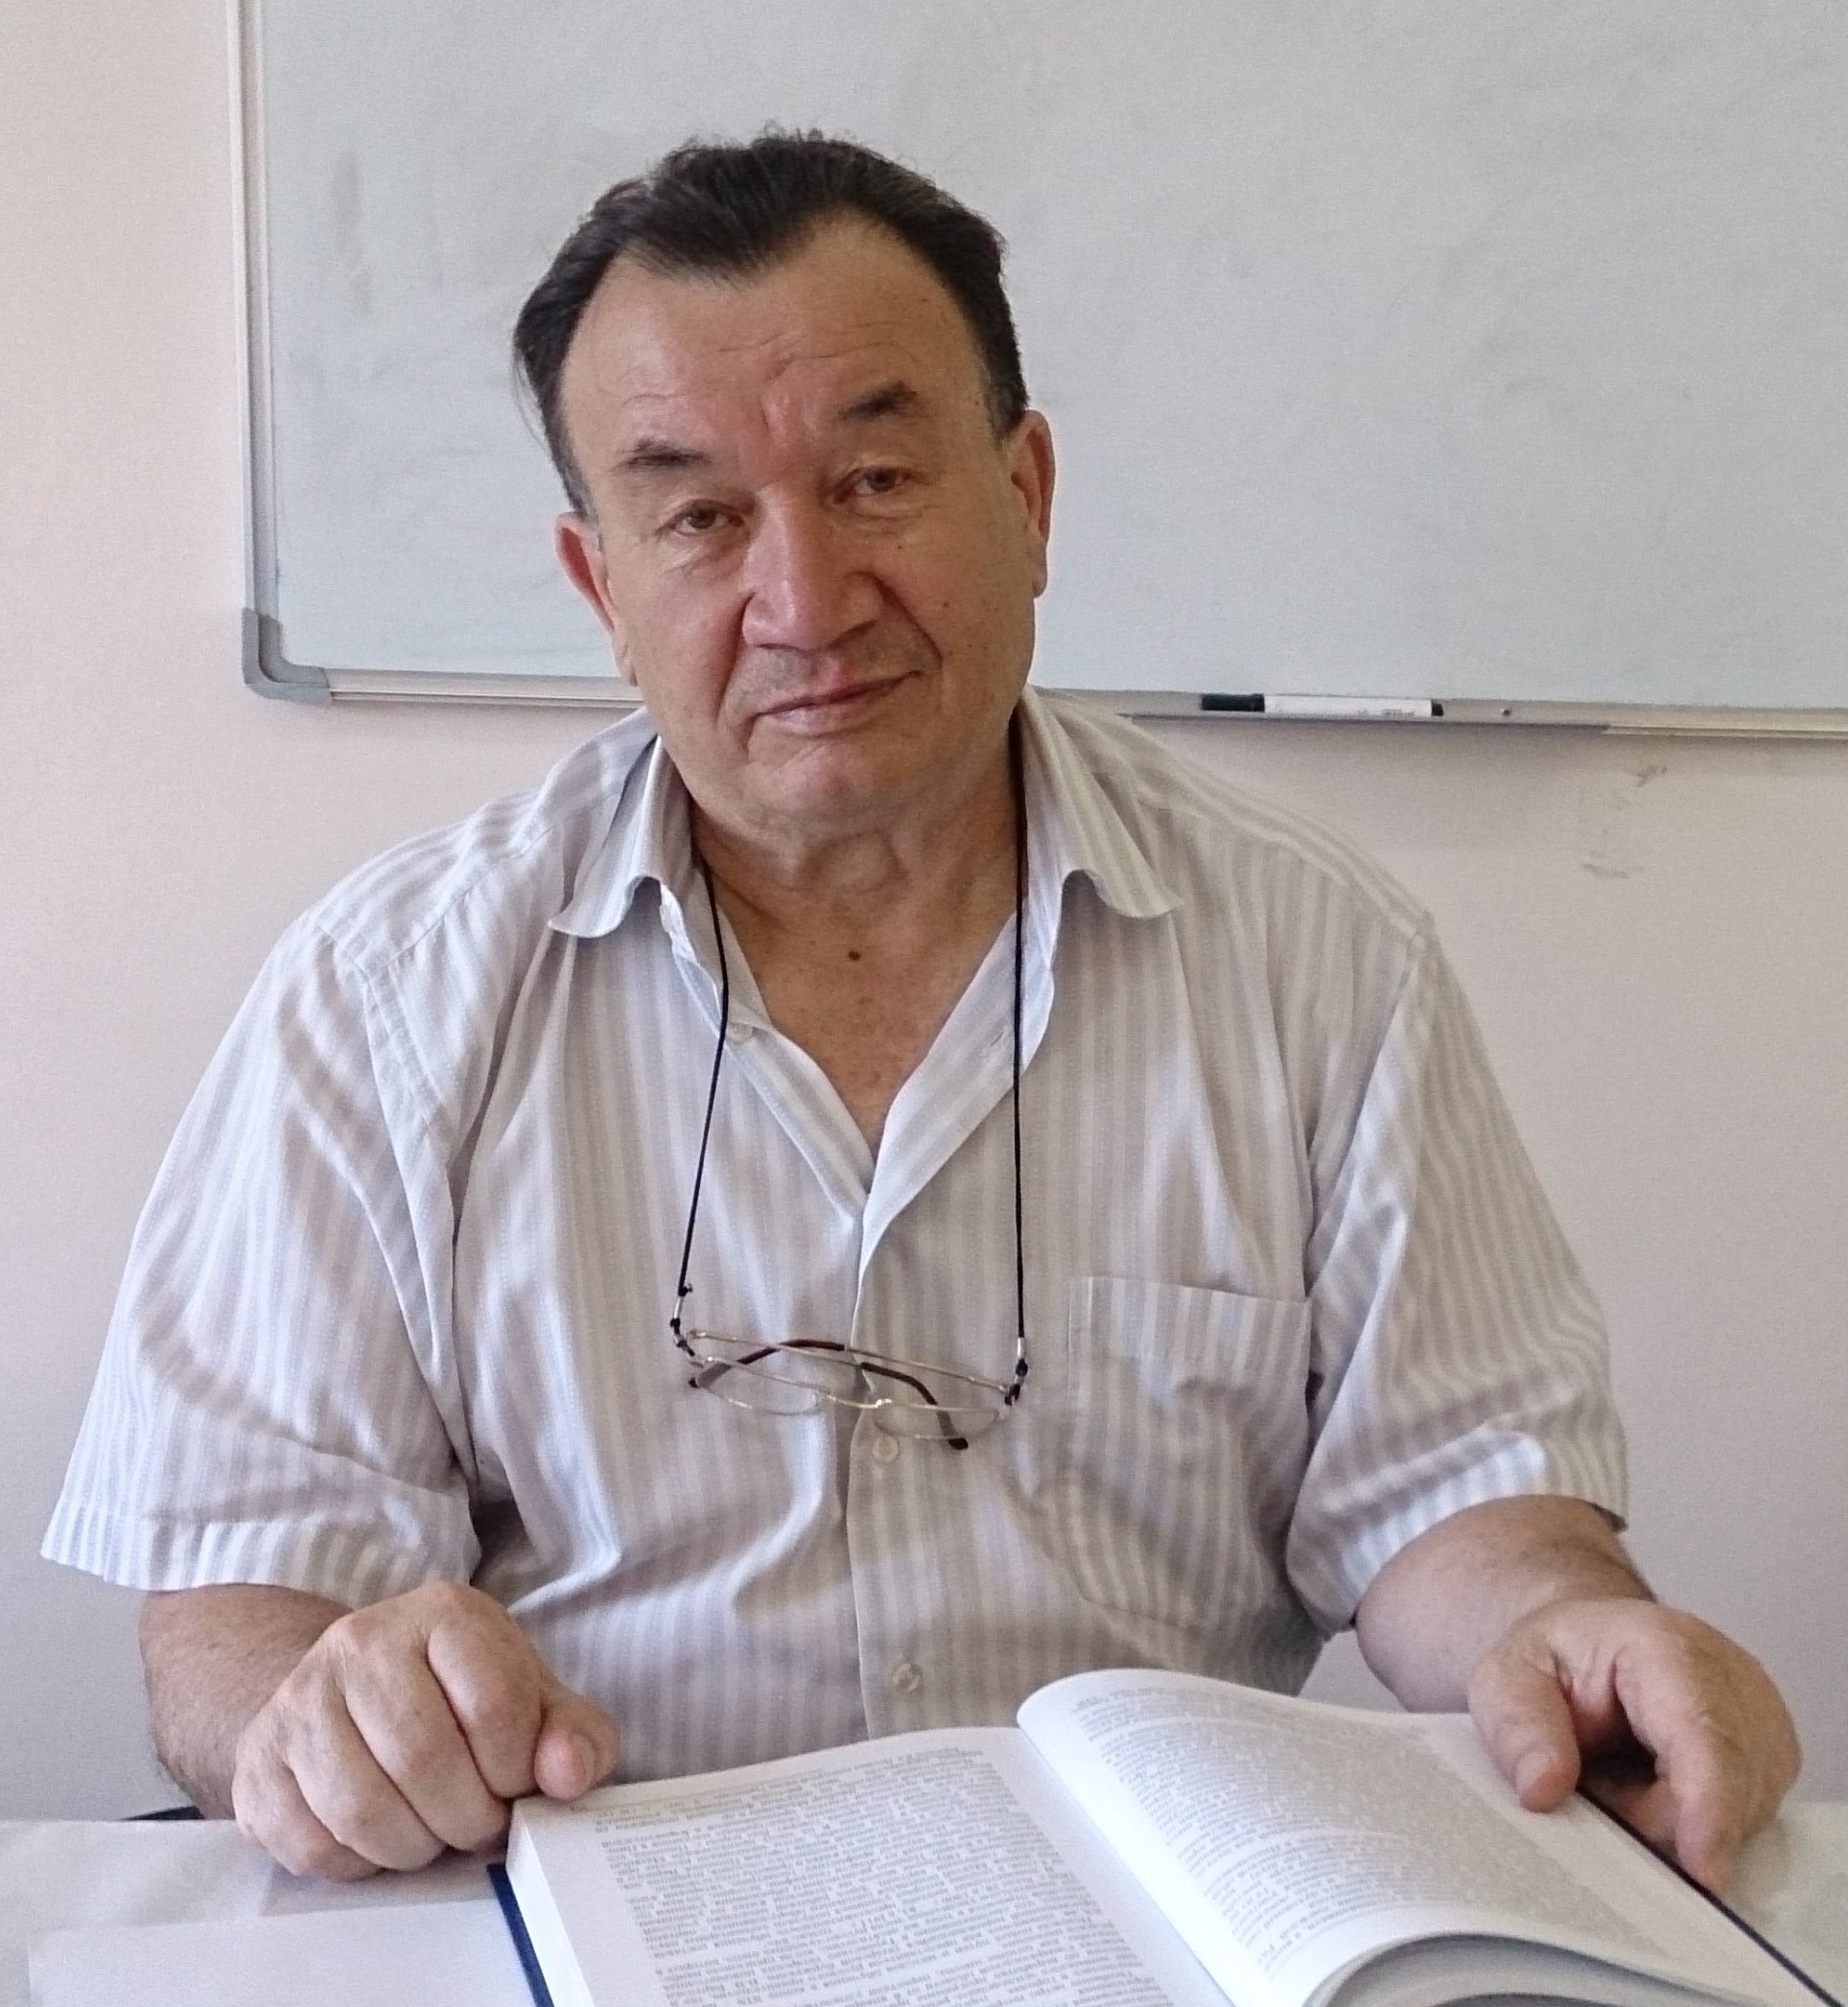 Ali Jon. Bishkek. 08.6.2017